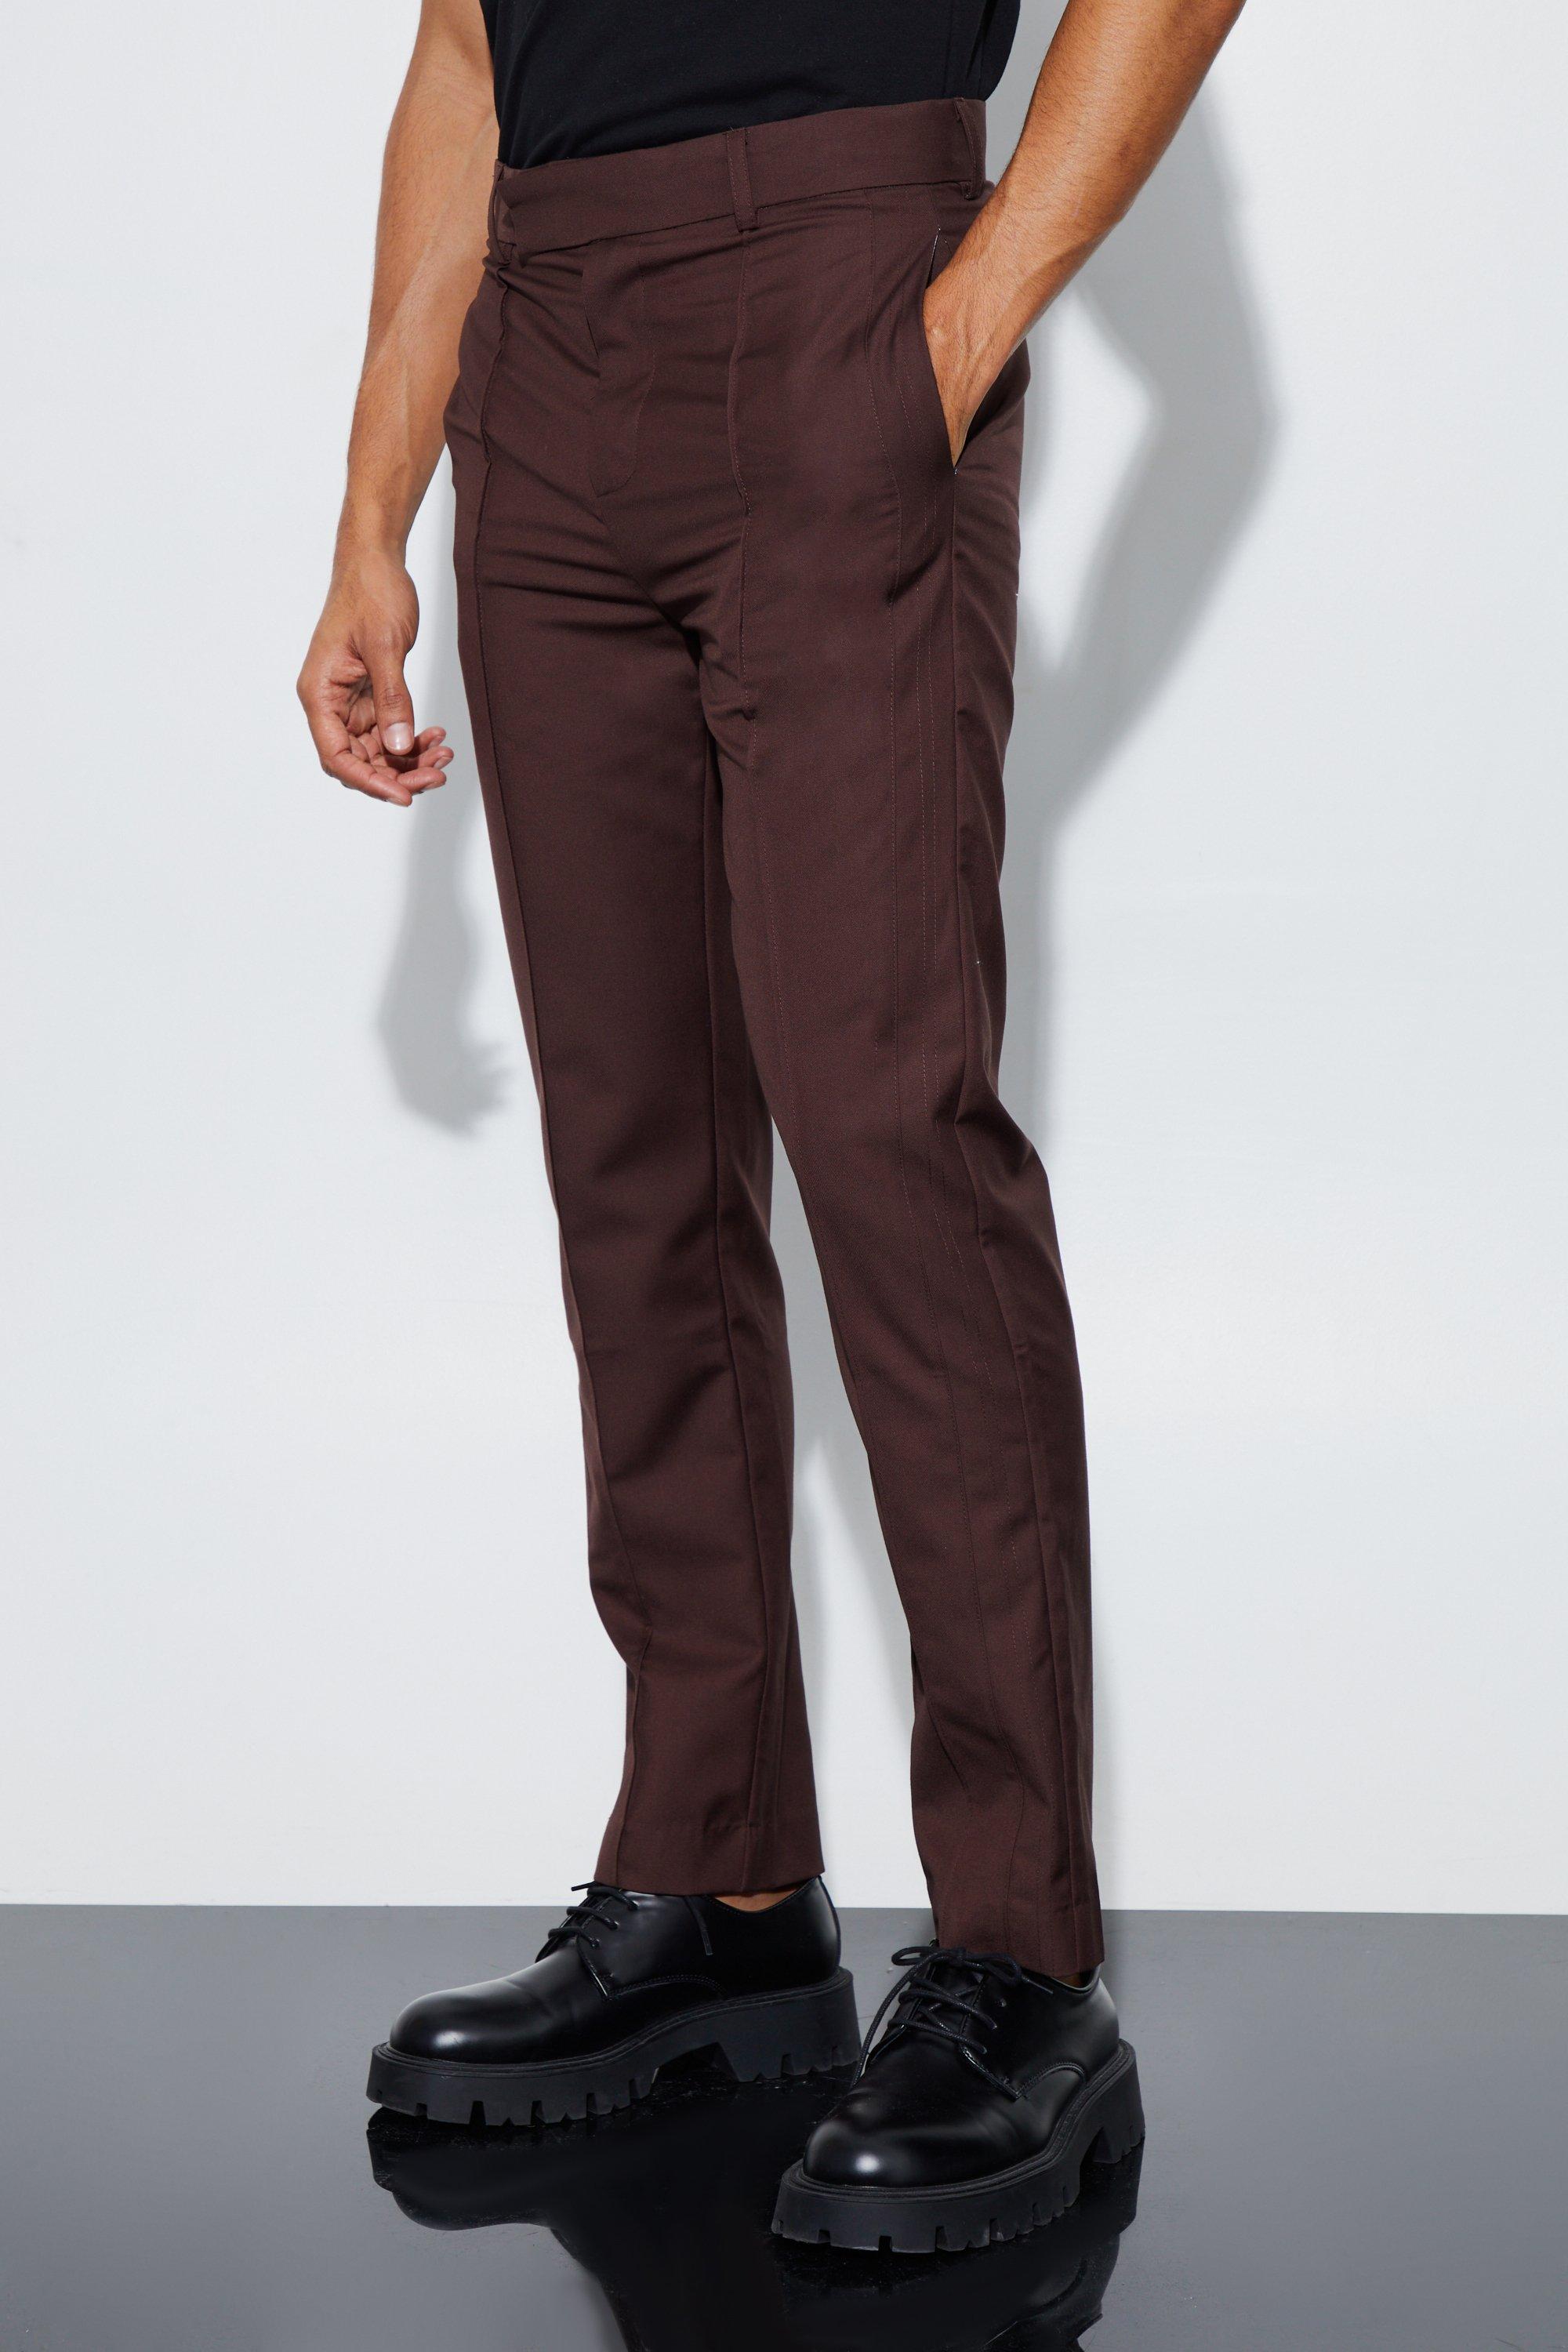 pantalon de costume droit homme - brun - 34, brun